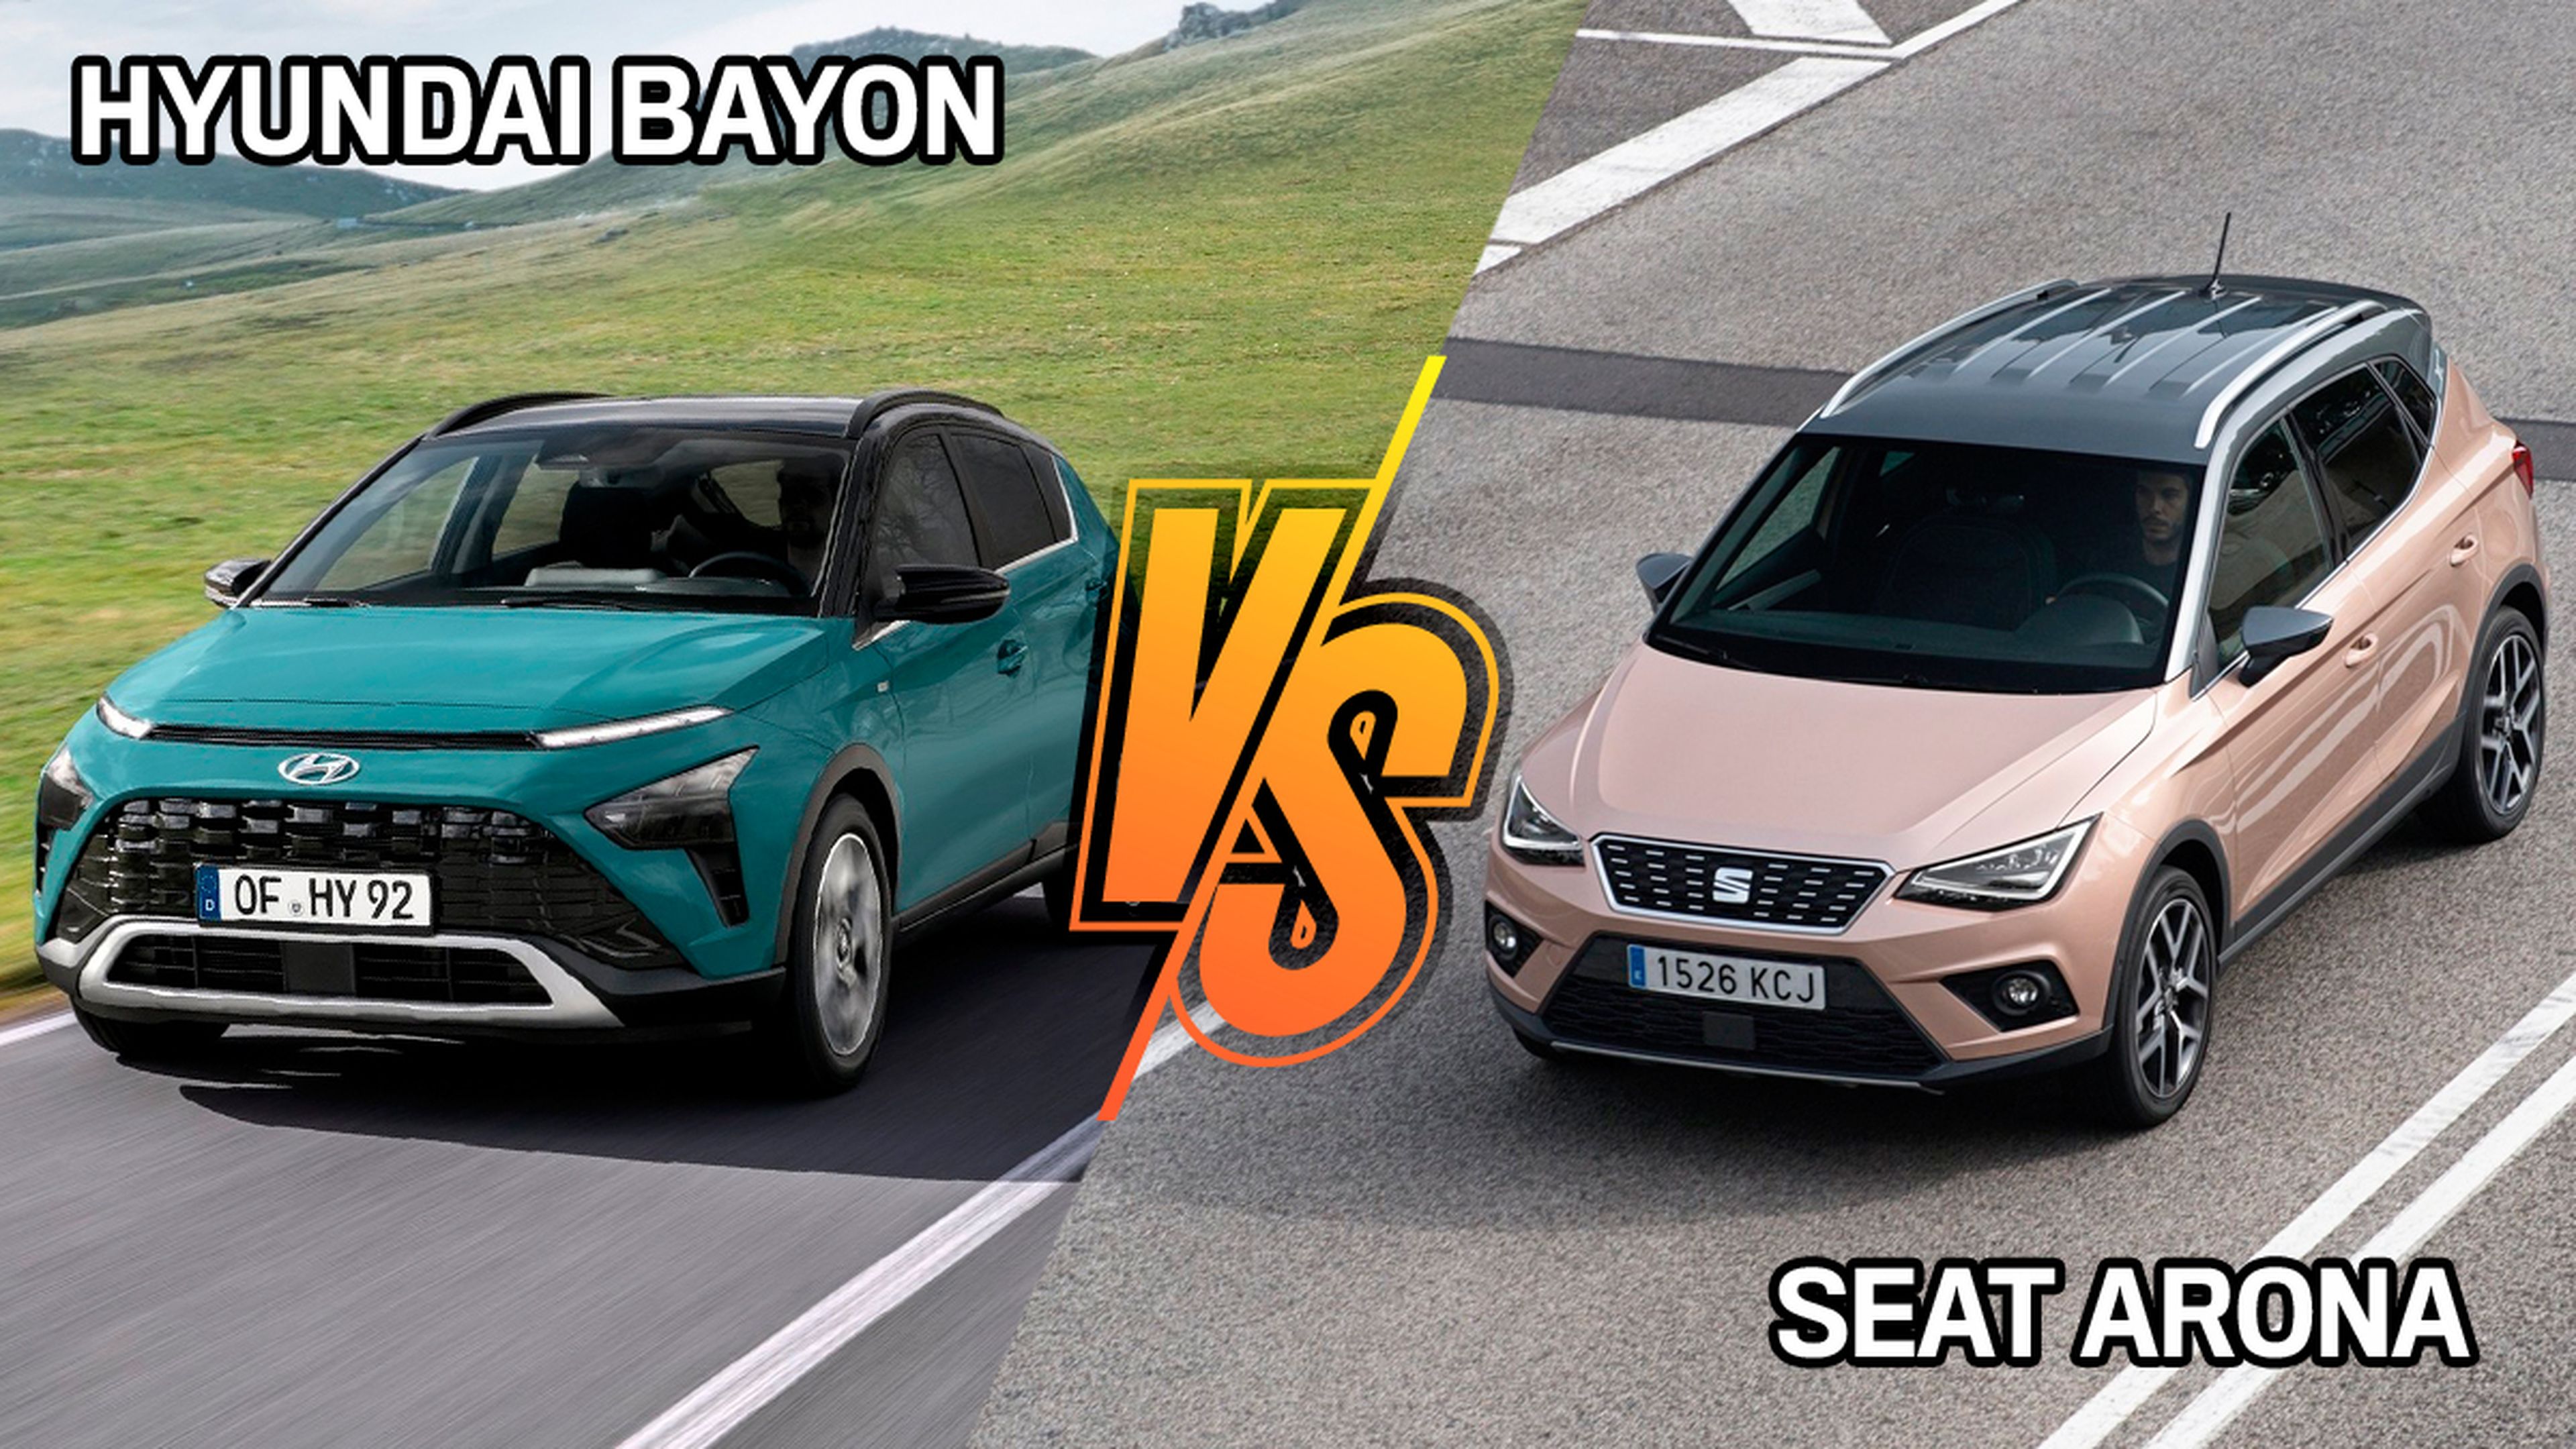 Hyundai Bayon o Seat Arona, ¿cuál comprar?